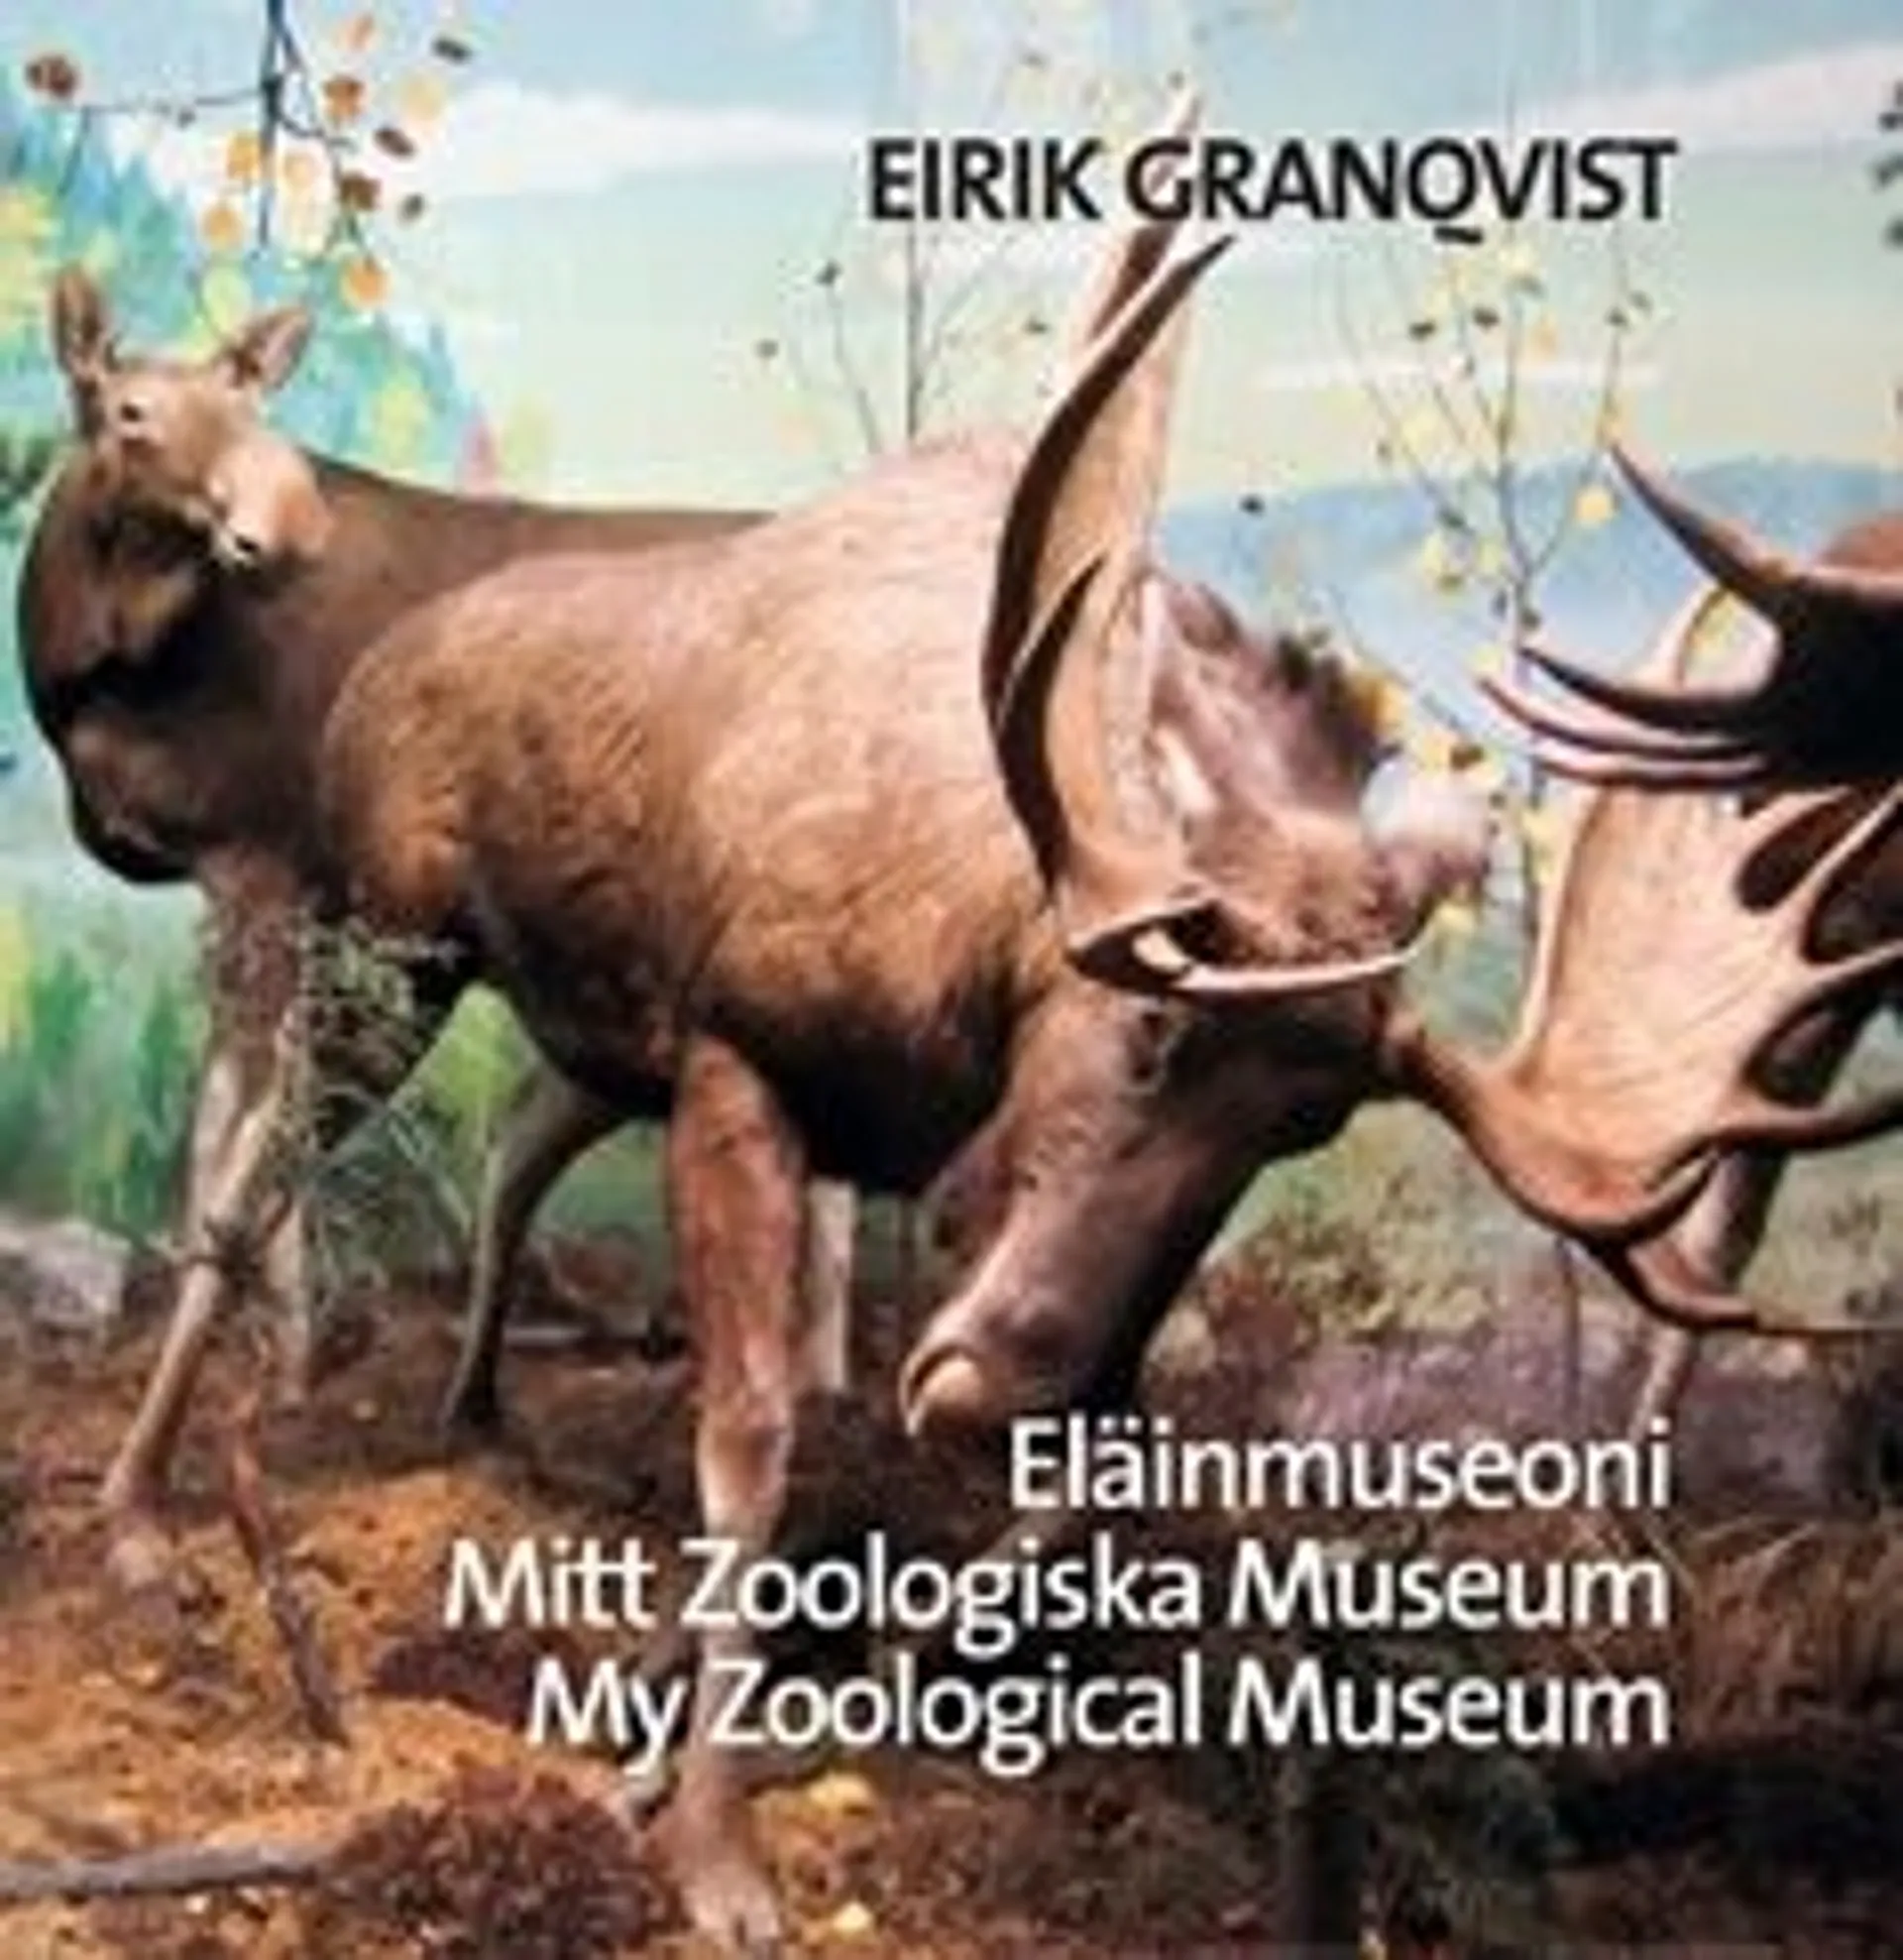 Granqvist, Eläinmuseoni